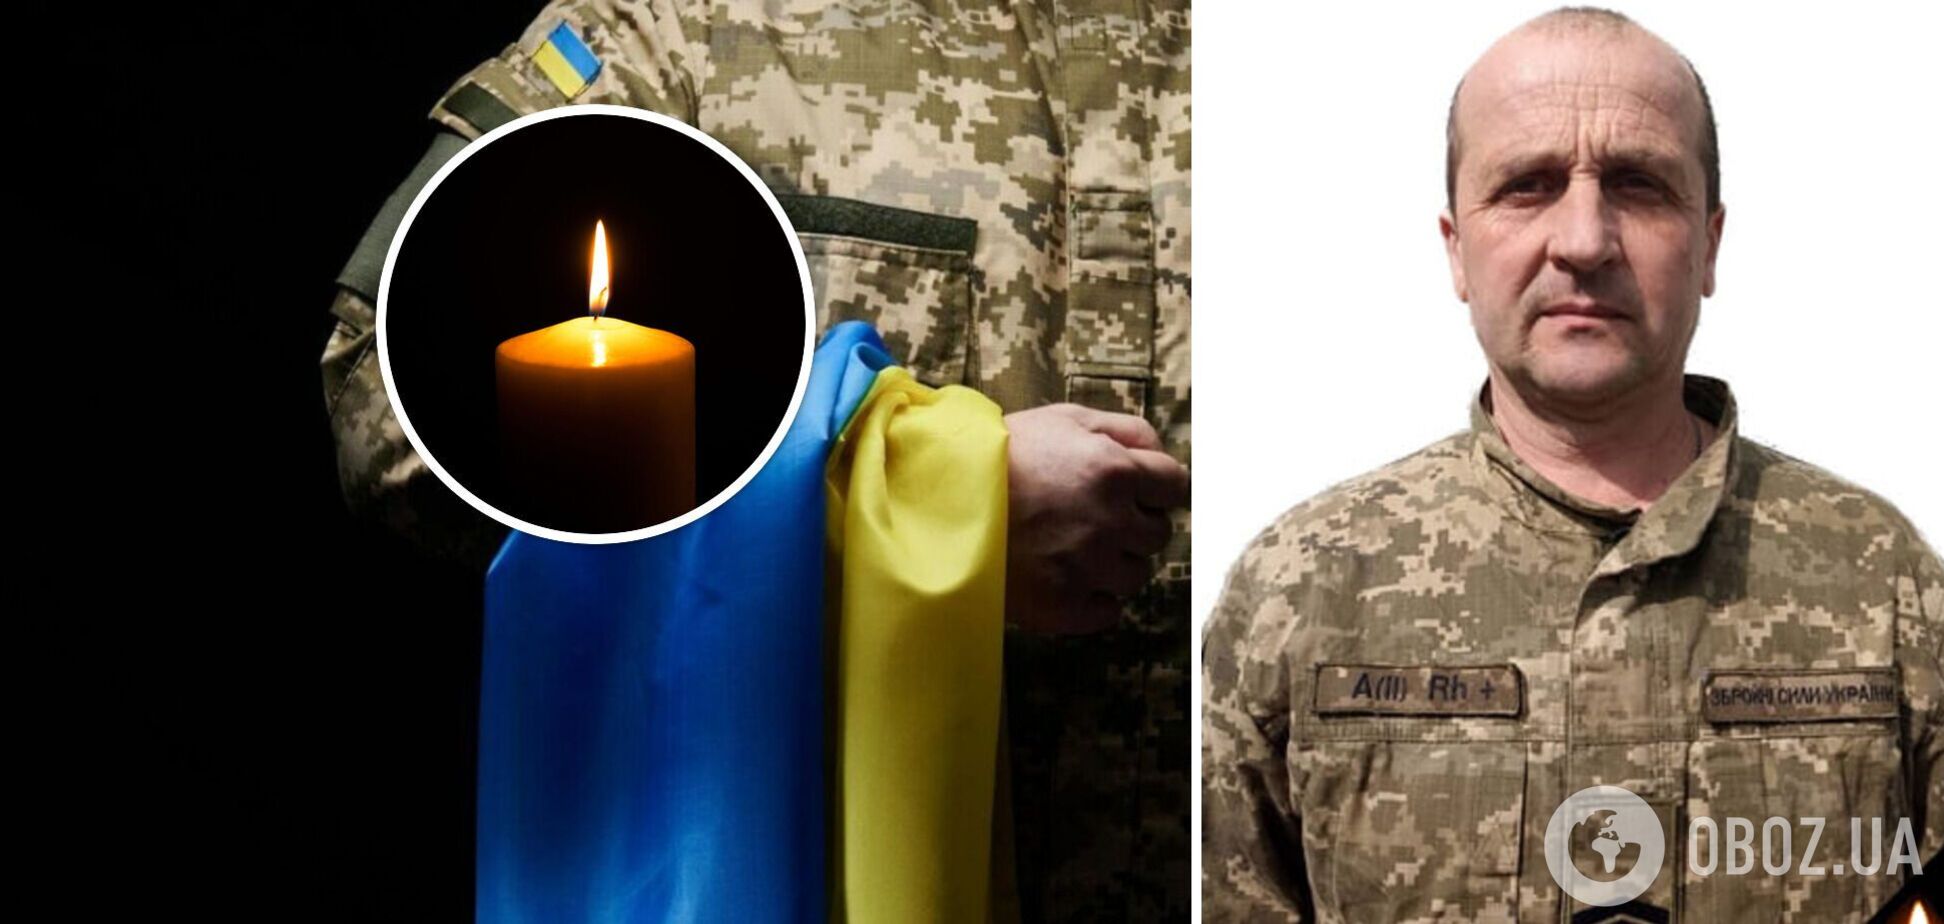 Повертається додому на щиті: під Бахмутом загинув сержант Юрій Горбаха з Обухова. Фото